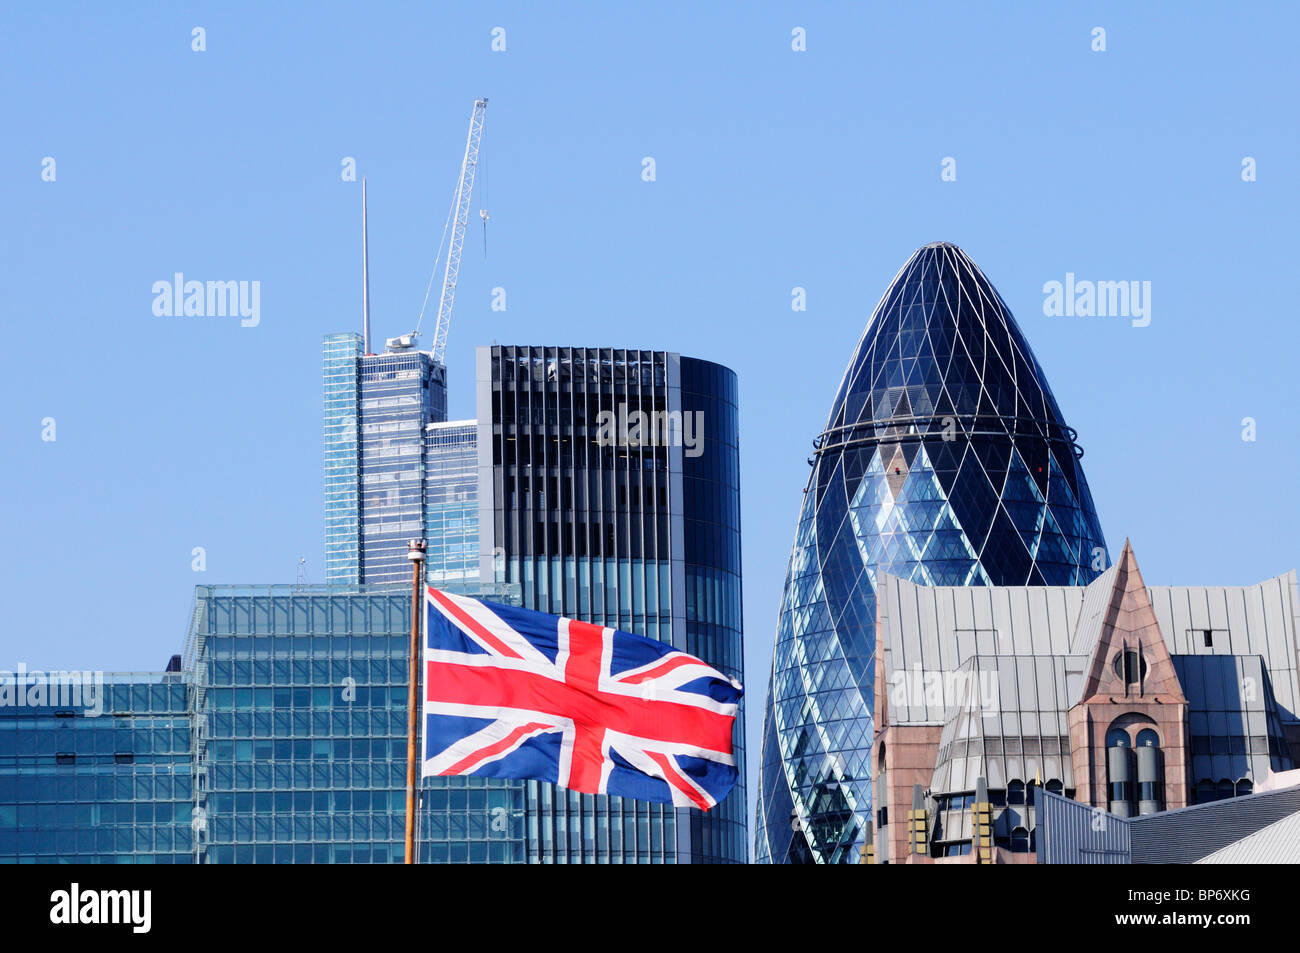 Résumé détail des bâtiments Ville de Londres vue de la rive sud, avec Union Jack Flag, London, England, UK Banque D'Images